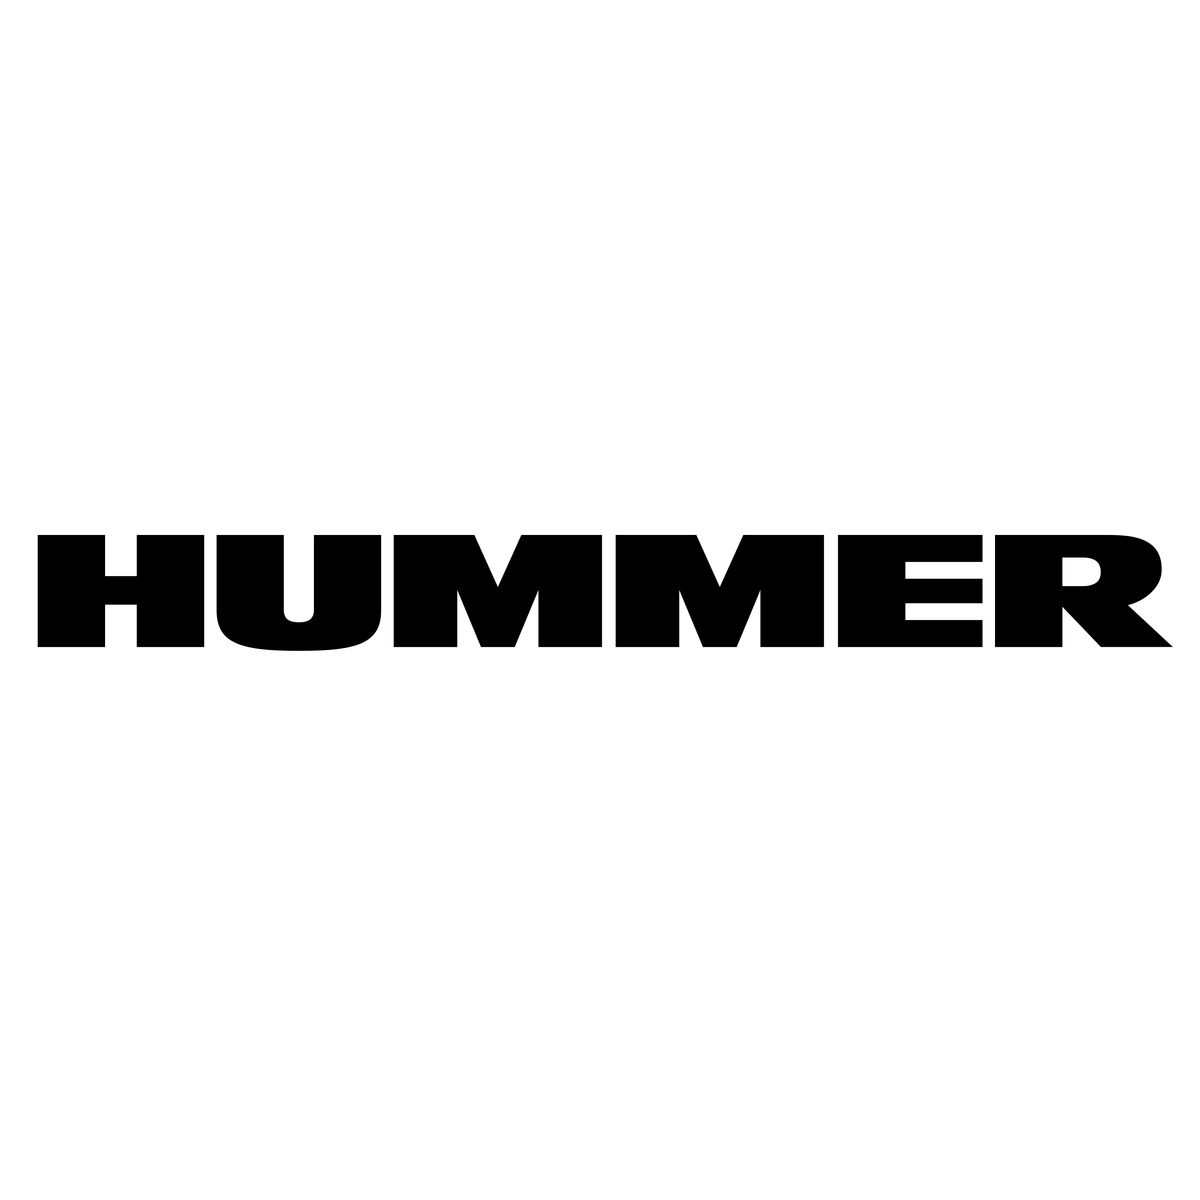 Hummer Key Code & Pin Code